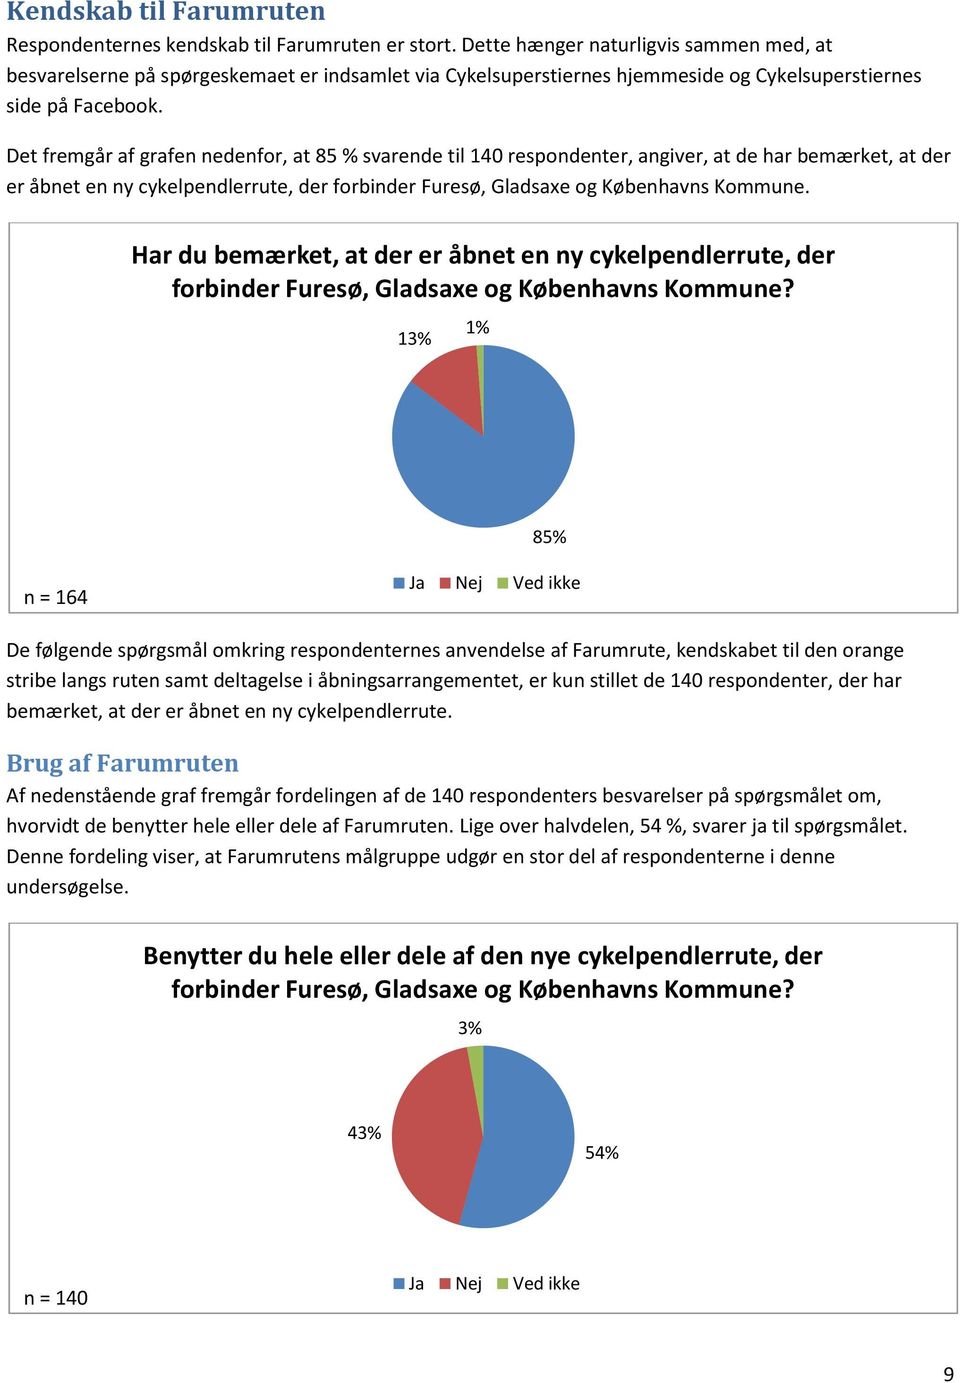 Det fremgår af grafen nedenfor, at 85 % svarende til 40 respondenter, angiver, at de har bemærket, at der er åbnet en ny cykelpendlerrute, der forbinder Furesø, Gladsaxe og Københavns Kommune.